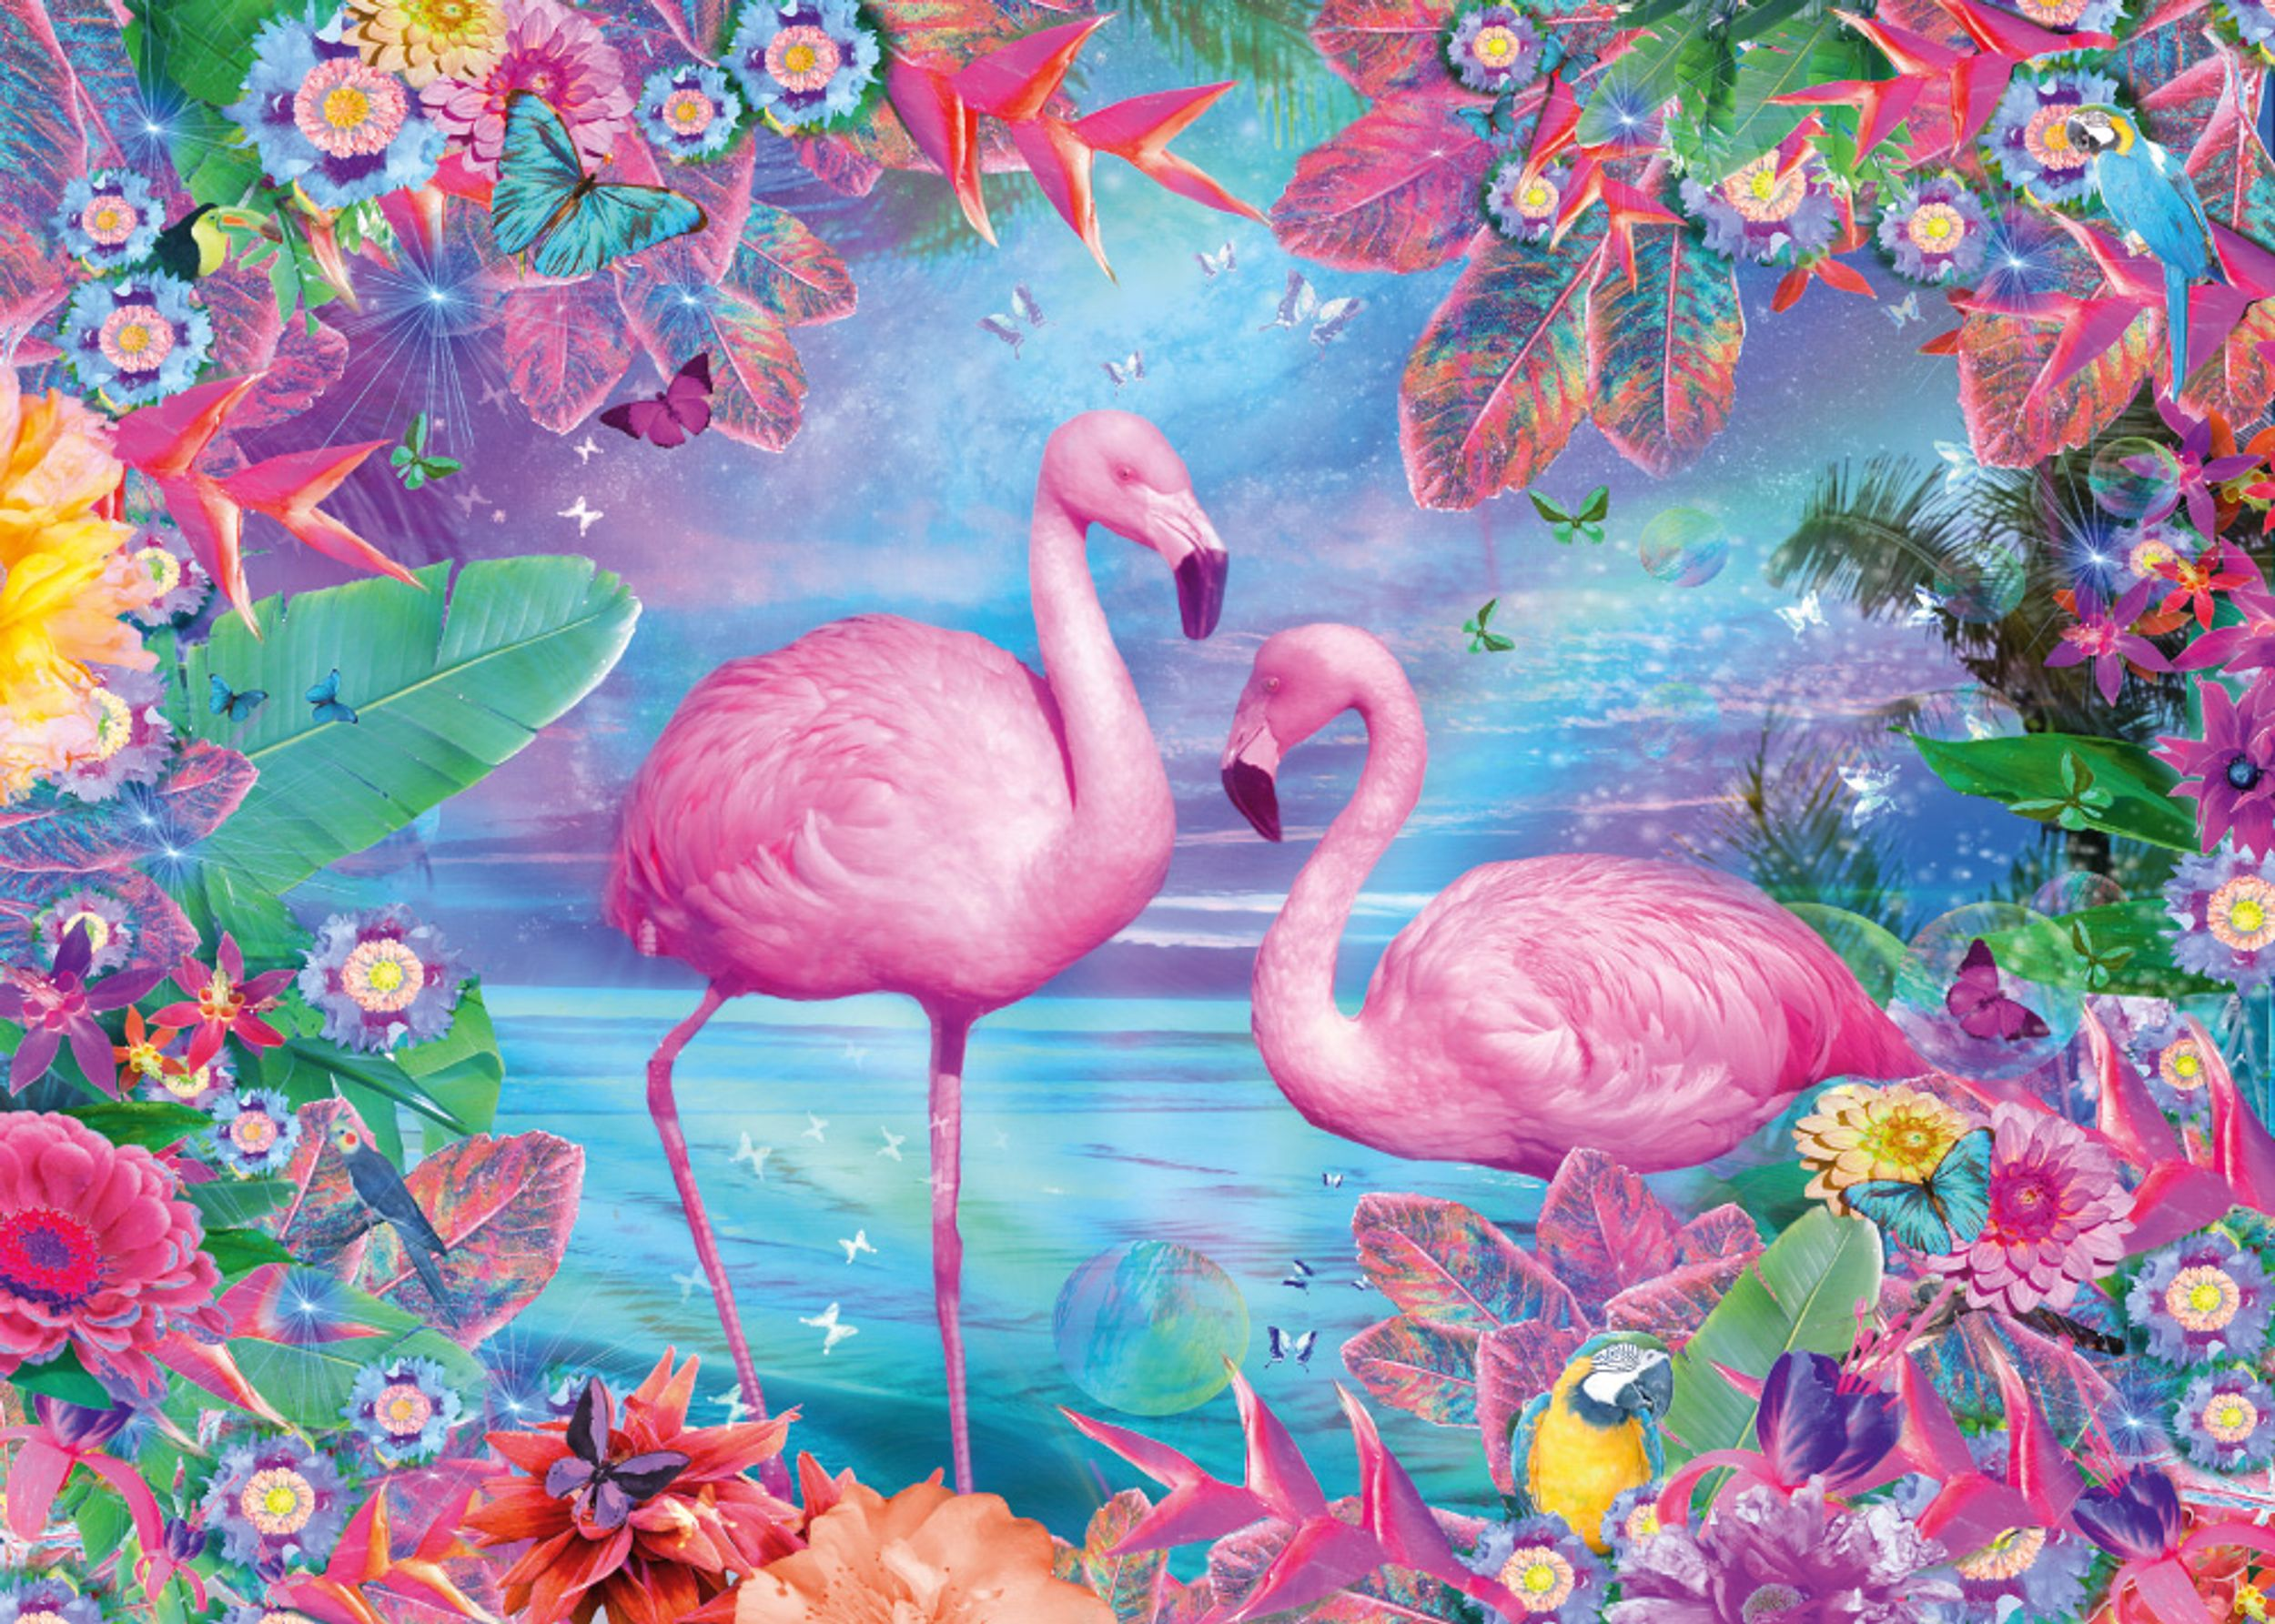 Puzzle SPIELE Flamingos SCHMIDT